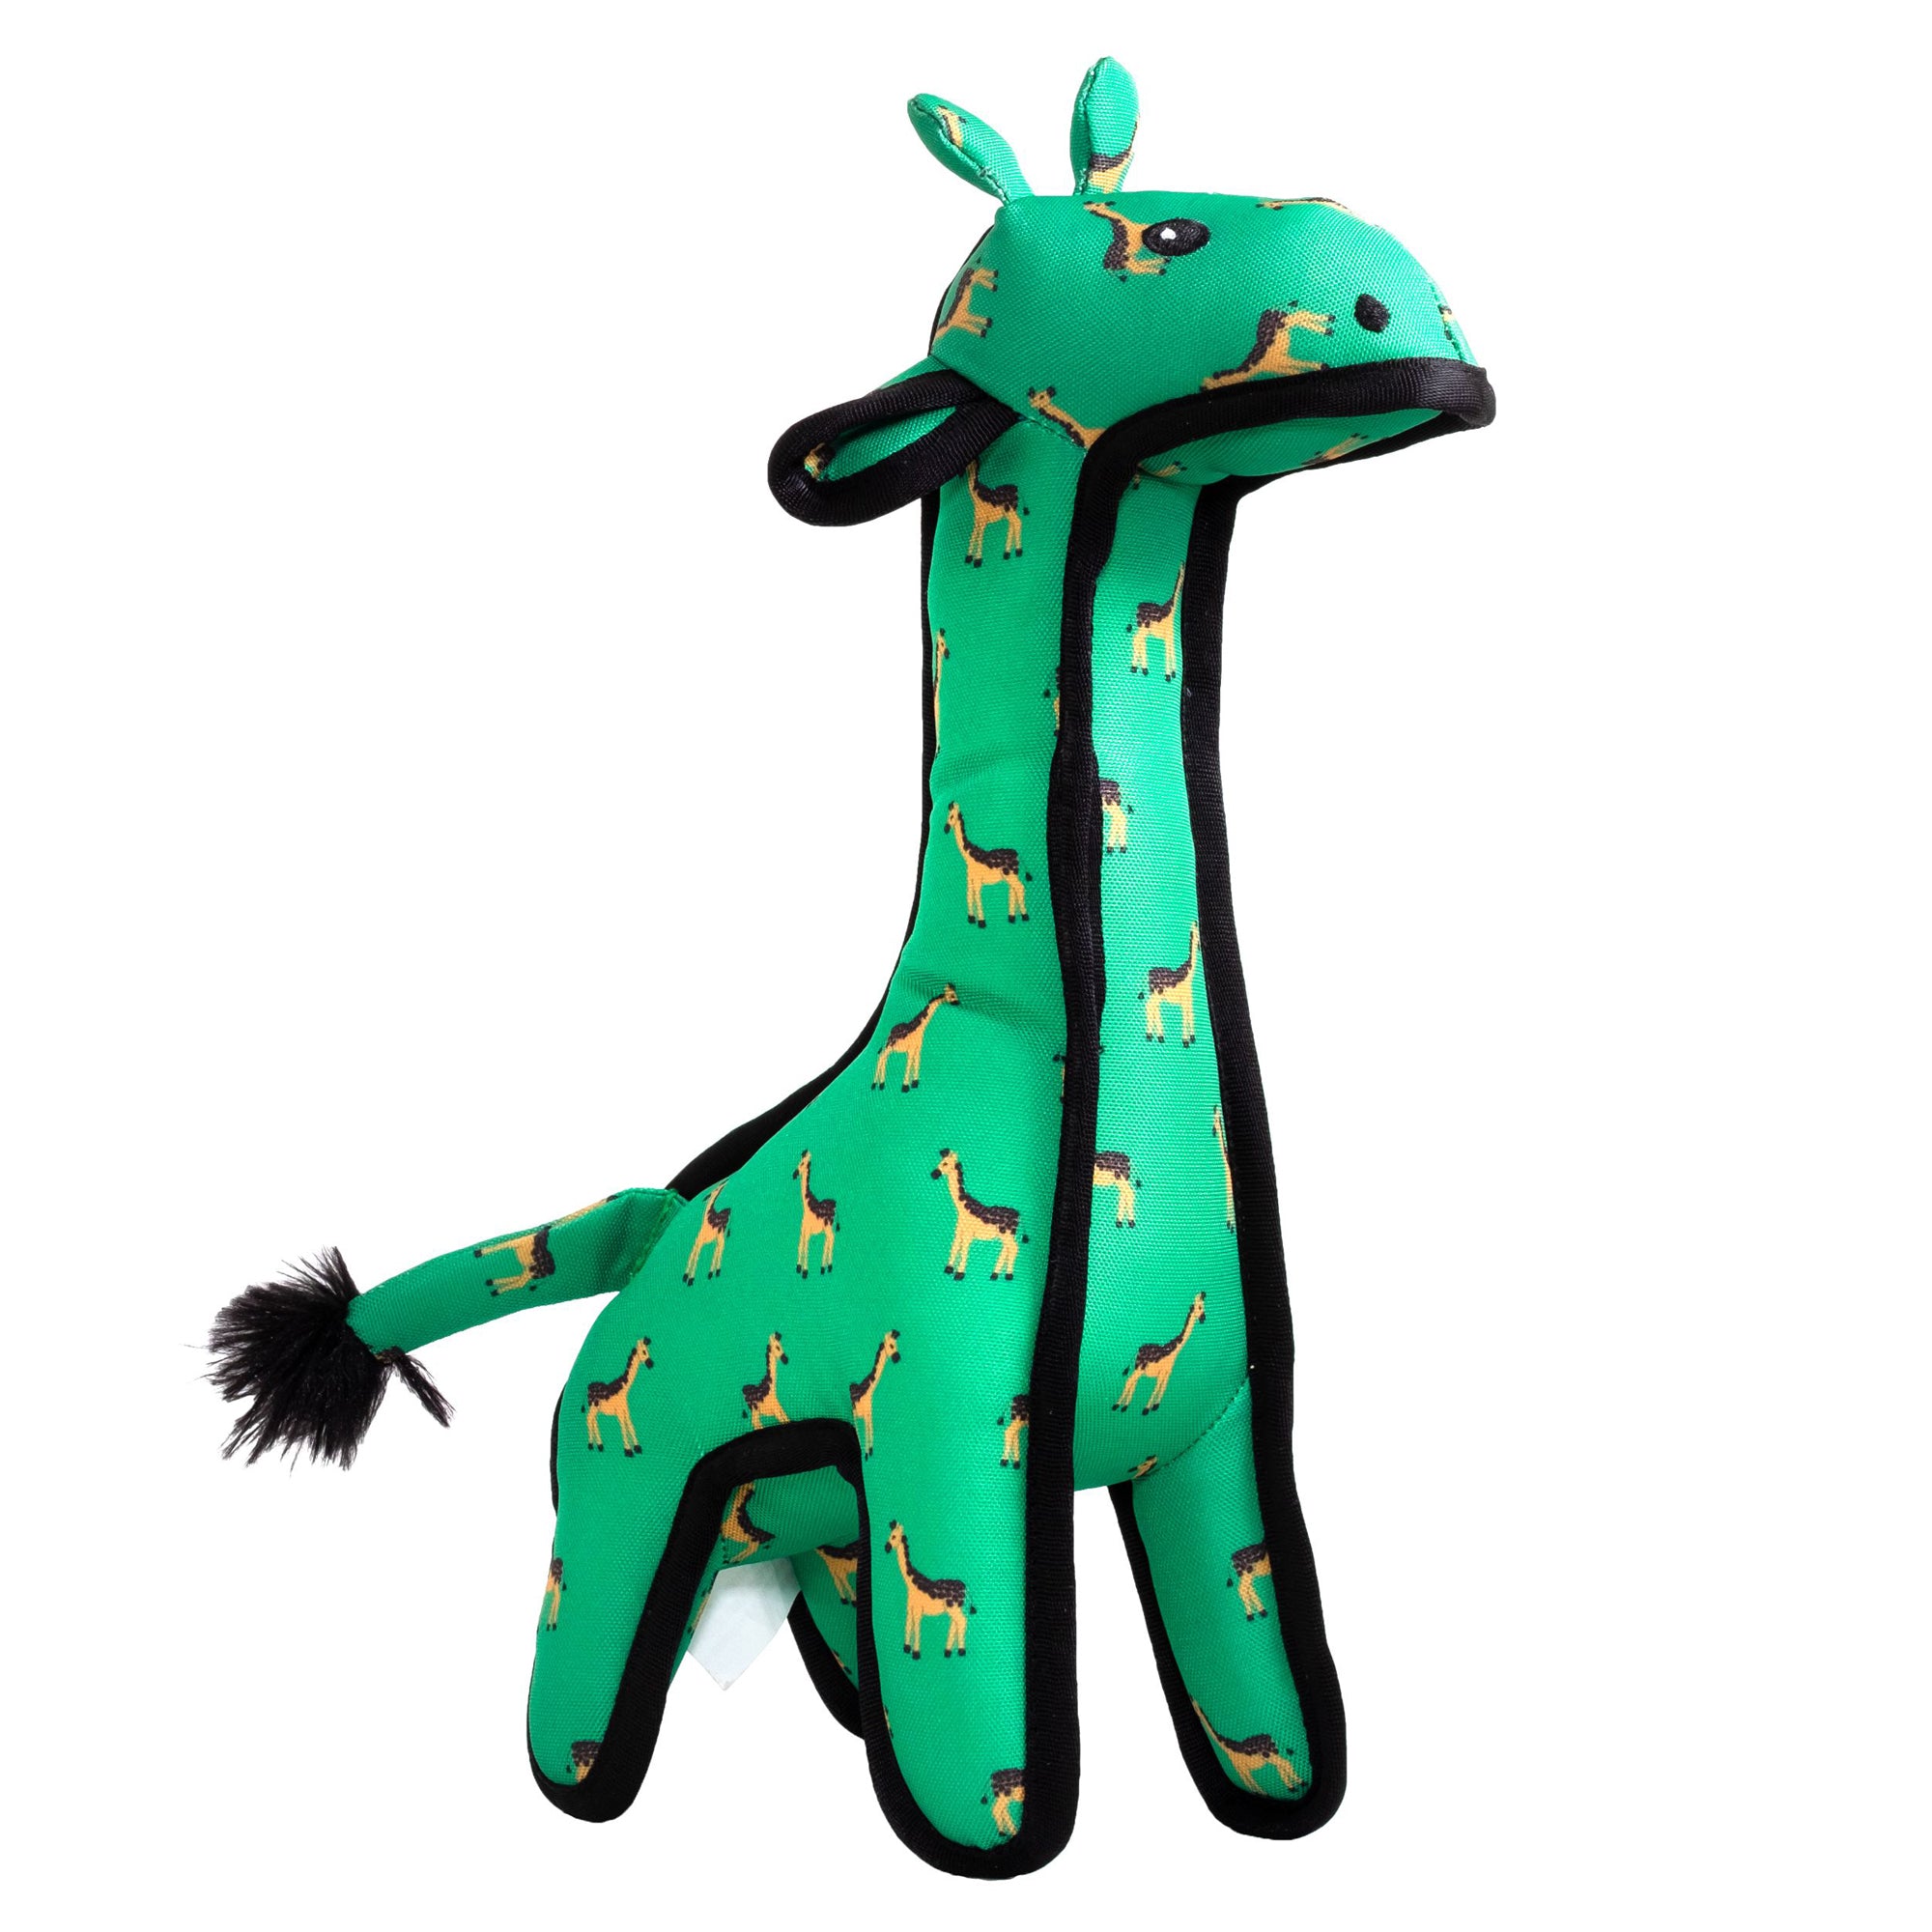 The Worthy Dog Geoffrey Giraffe Dog Toy